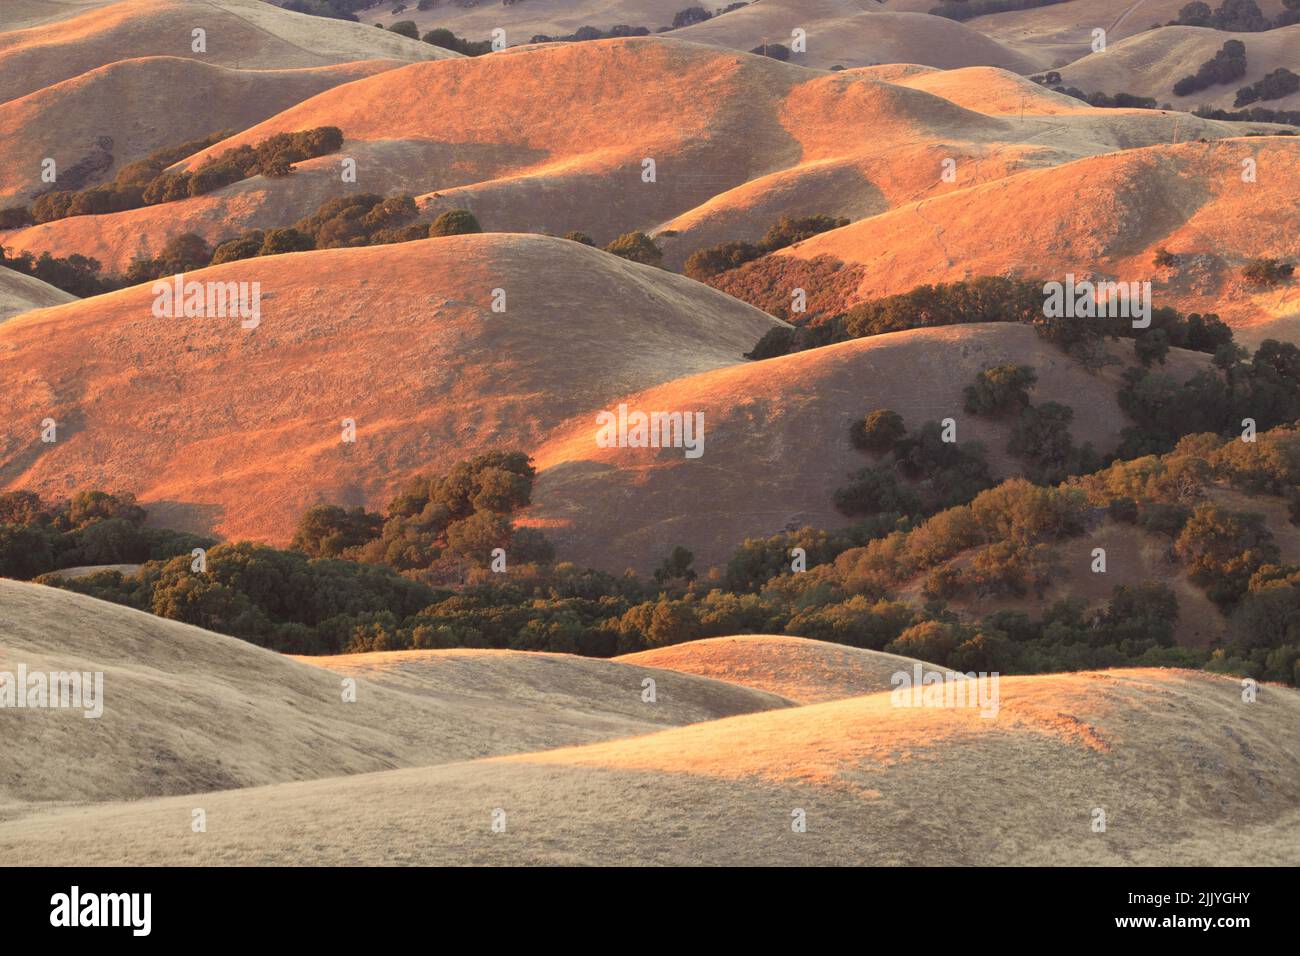 Sanfte Farben Des Sonnenuntergangs Malen Die Kalifornischen Goldenen Hügel. Mission Peak Regional Preserve, Alameda County, Kalifornien, USA. Stockfoto